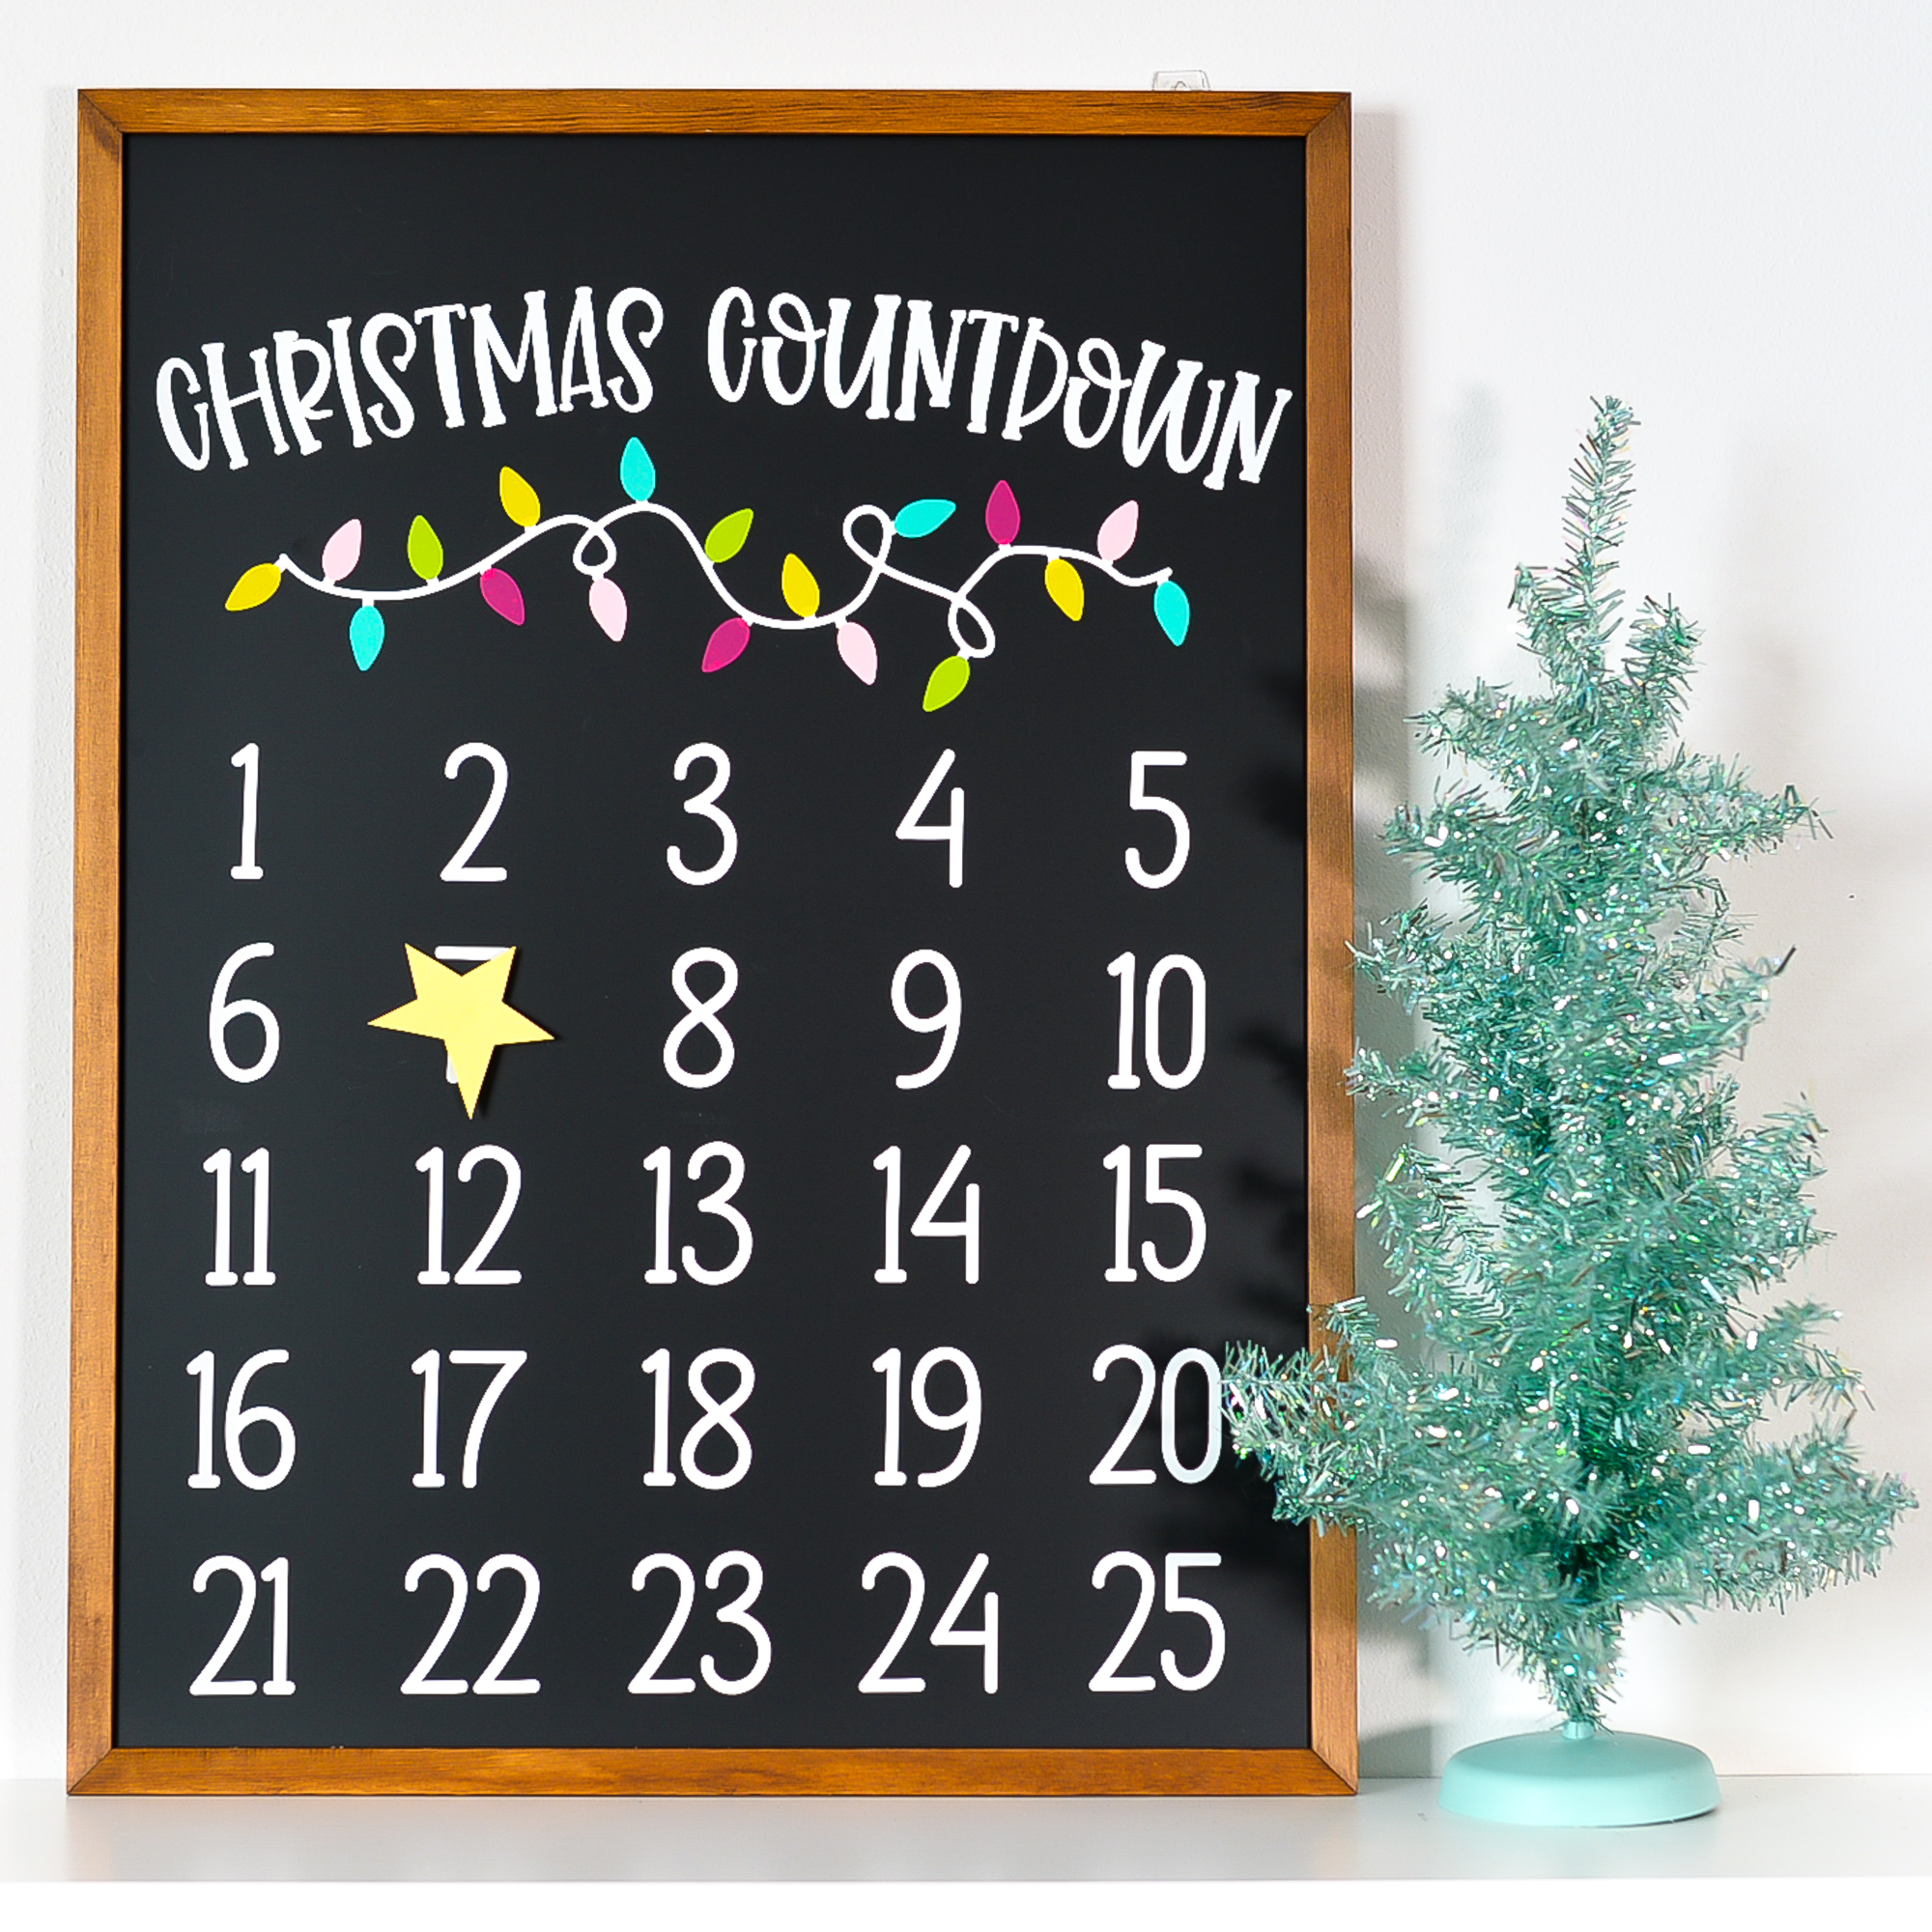 DIY Christmas Countdown Calendar with the Cricut LaptrinhX